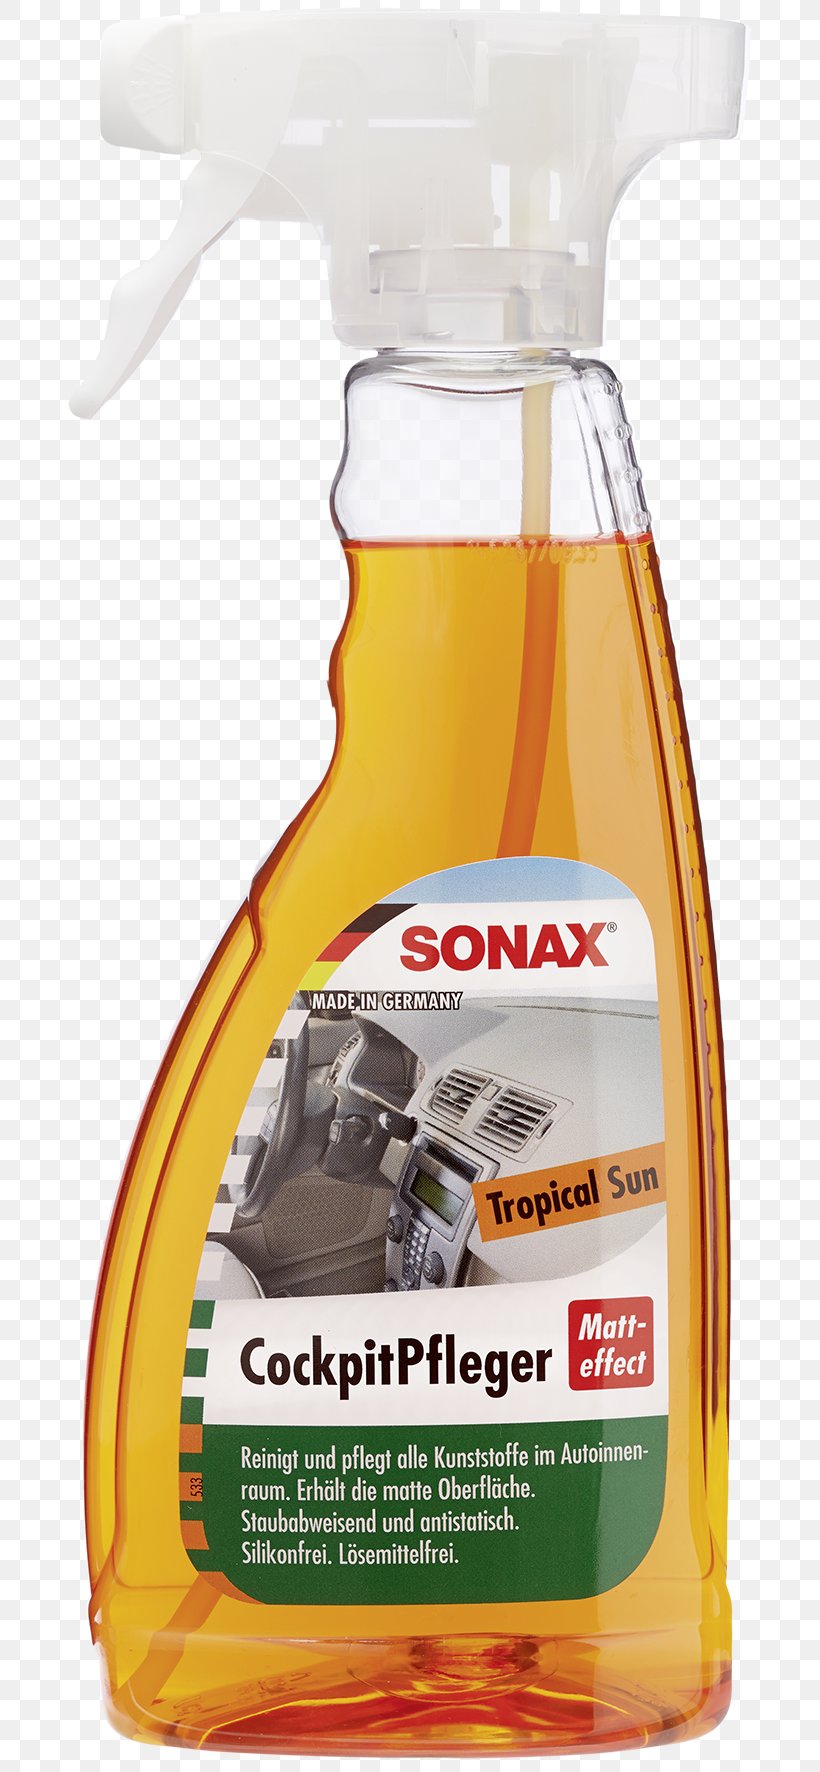 Sonax Car Milliliter Aerosol Spray Plastic, PNG, 702x1772px, Sonax, Aerosol Spray, Bottle, Car, Cleaning Download Free